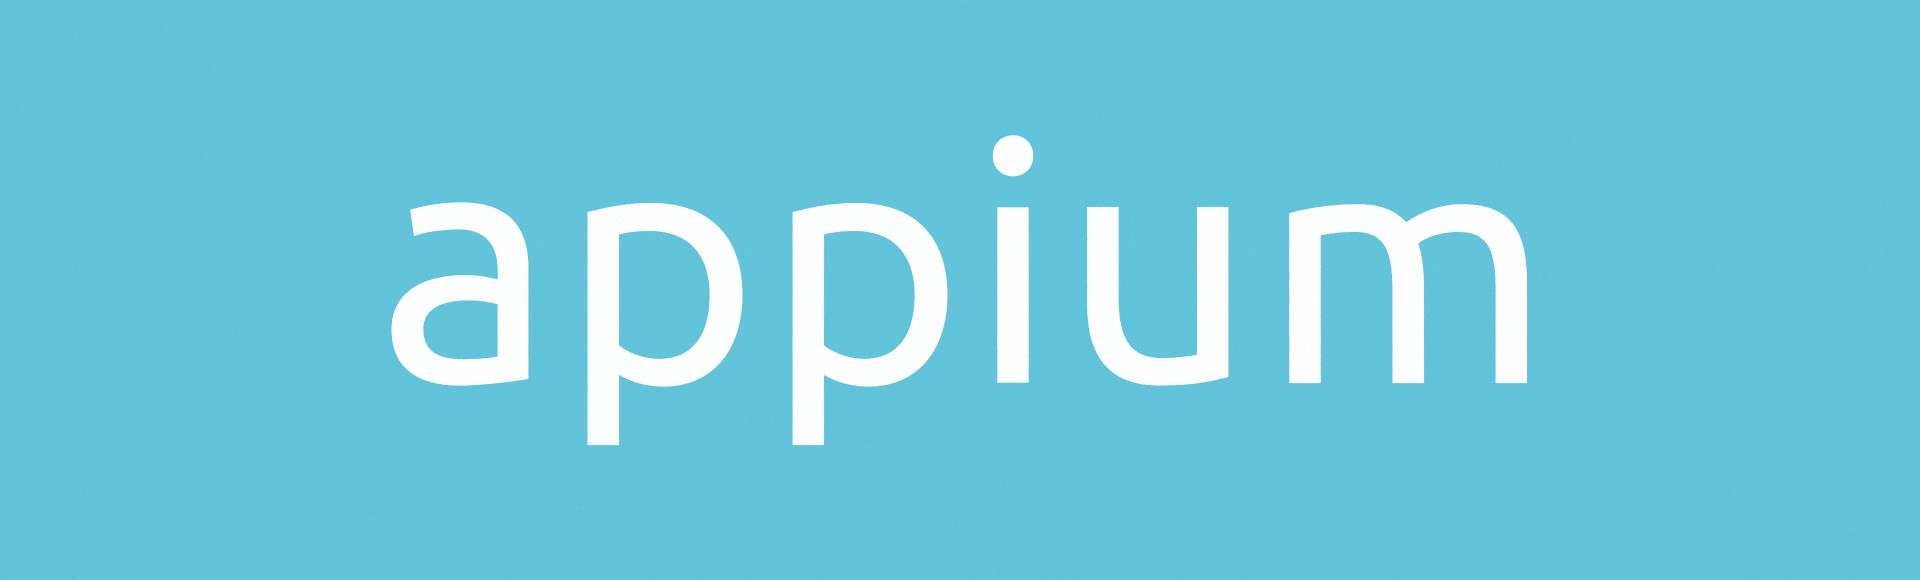 Appium Logo - Appium Brand - PS Design | Branding & Design Studio